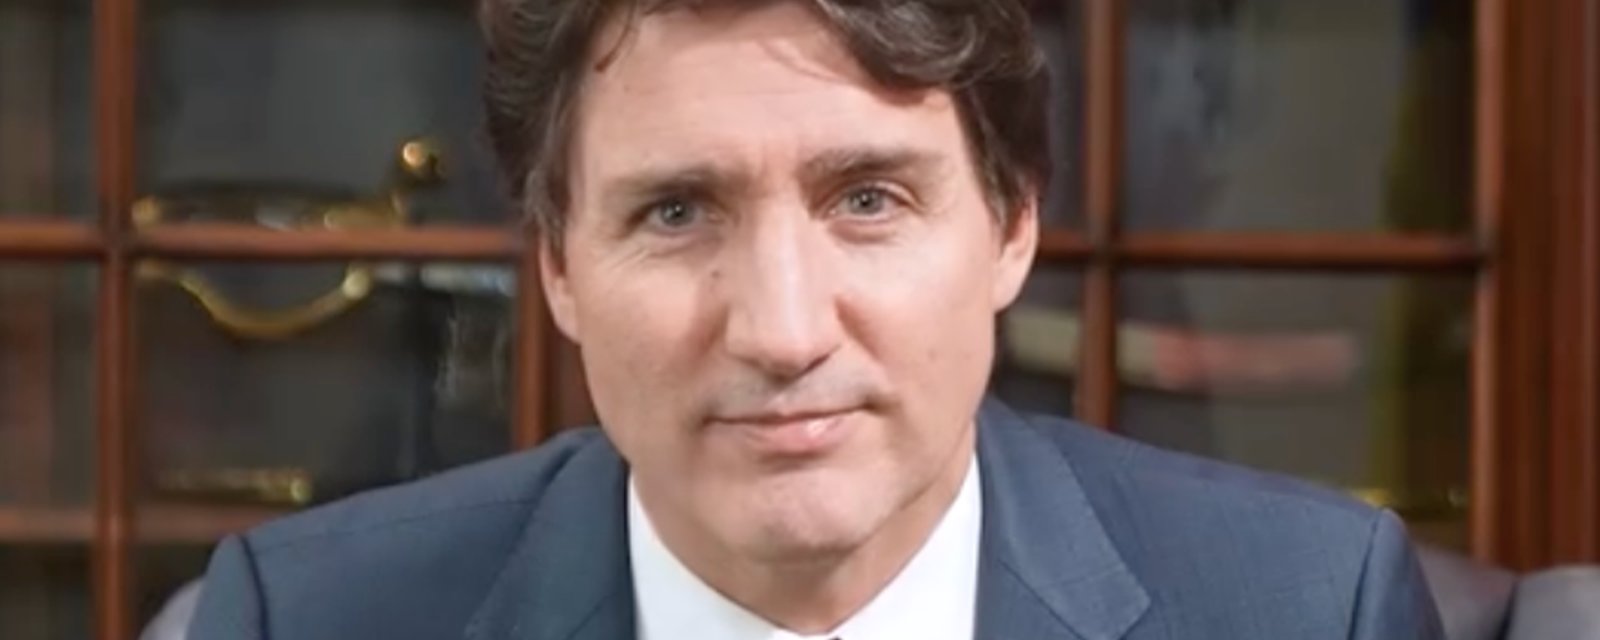 Justin Trudeau a sérieusement pensé à démissionner à cause des difficultés dans son mariage